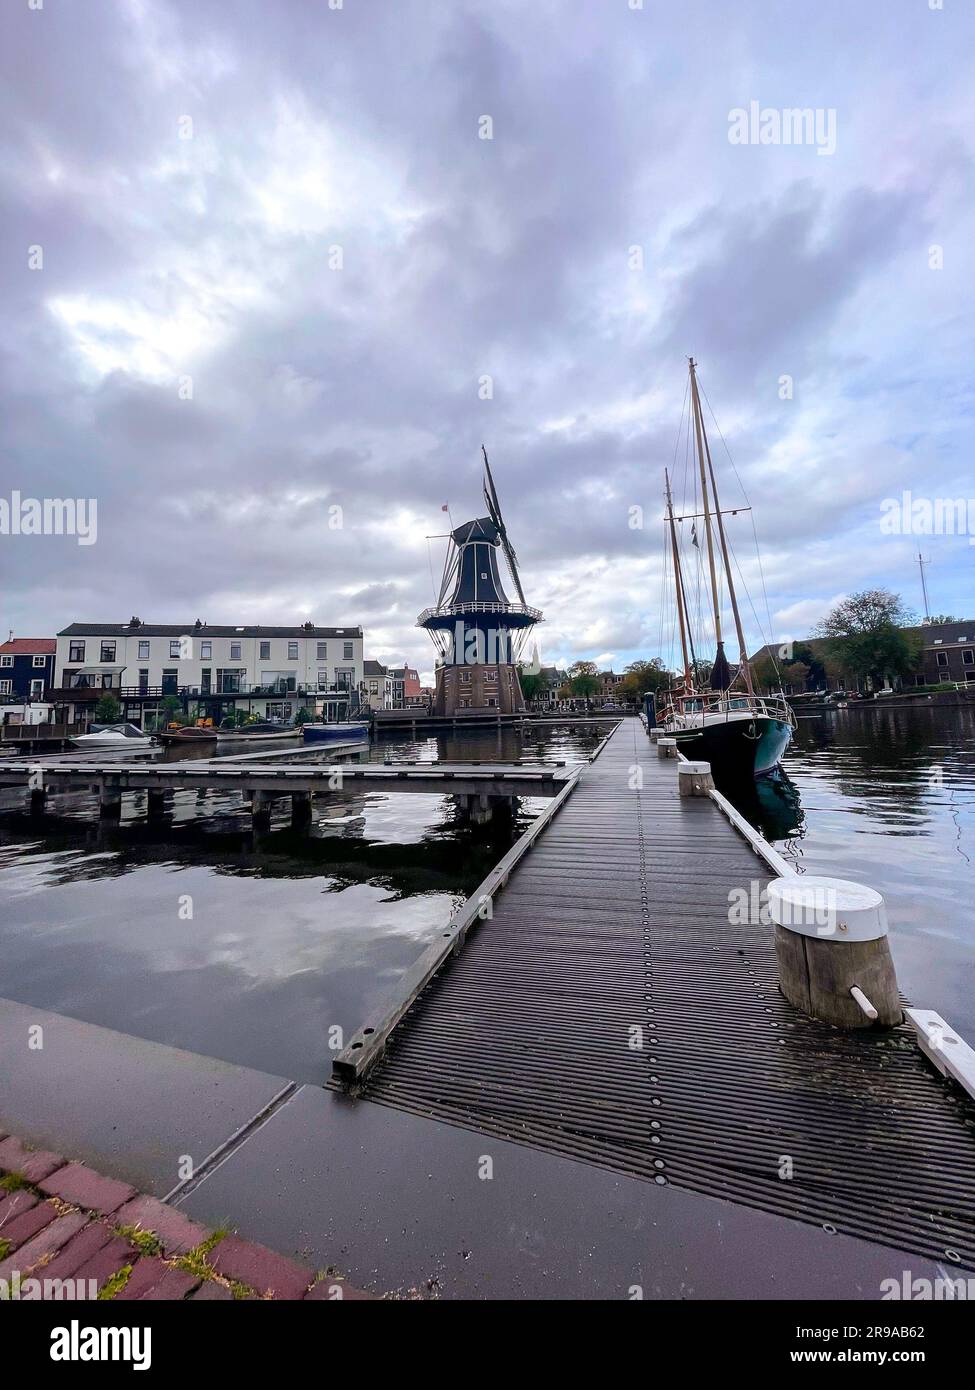 Molen de Adriaan ou Adrian Windmills à Haarlem, la capitale de la province du Nord de la Hollande, fait également partie de la région métropolitaine d'Amsterdam. Banque D'Images